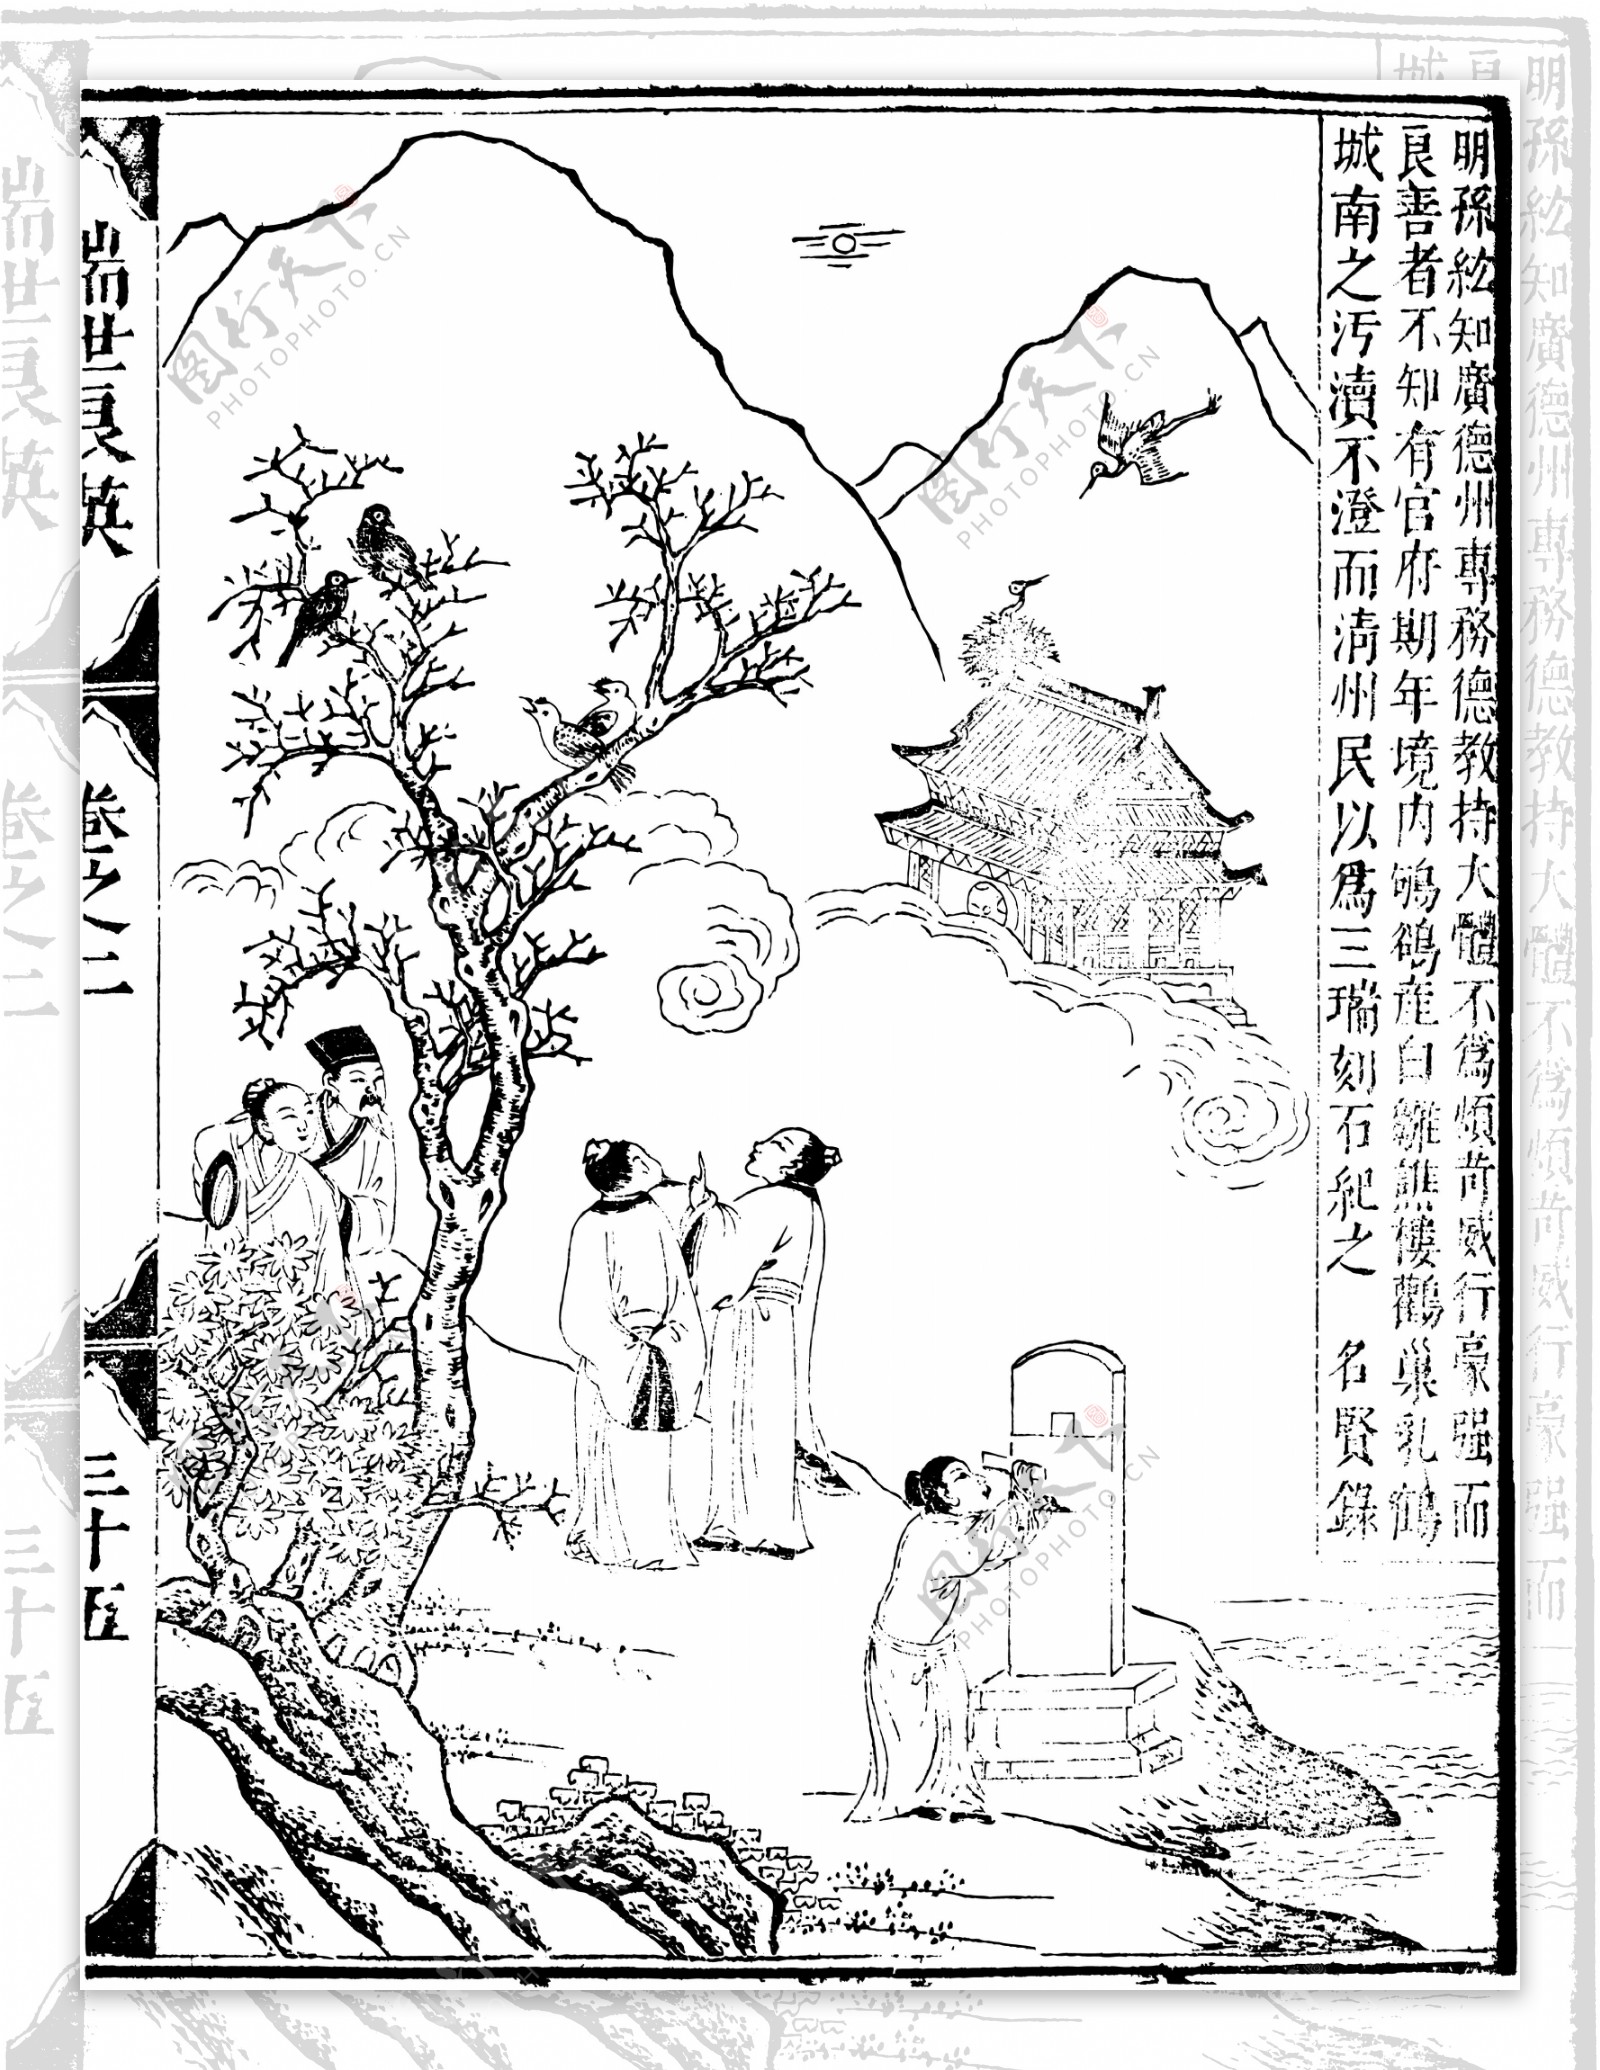 瑞世良英木刻版画中国传统文化09